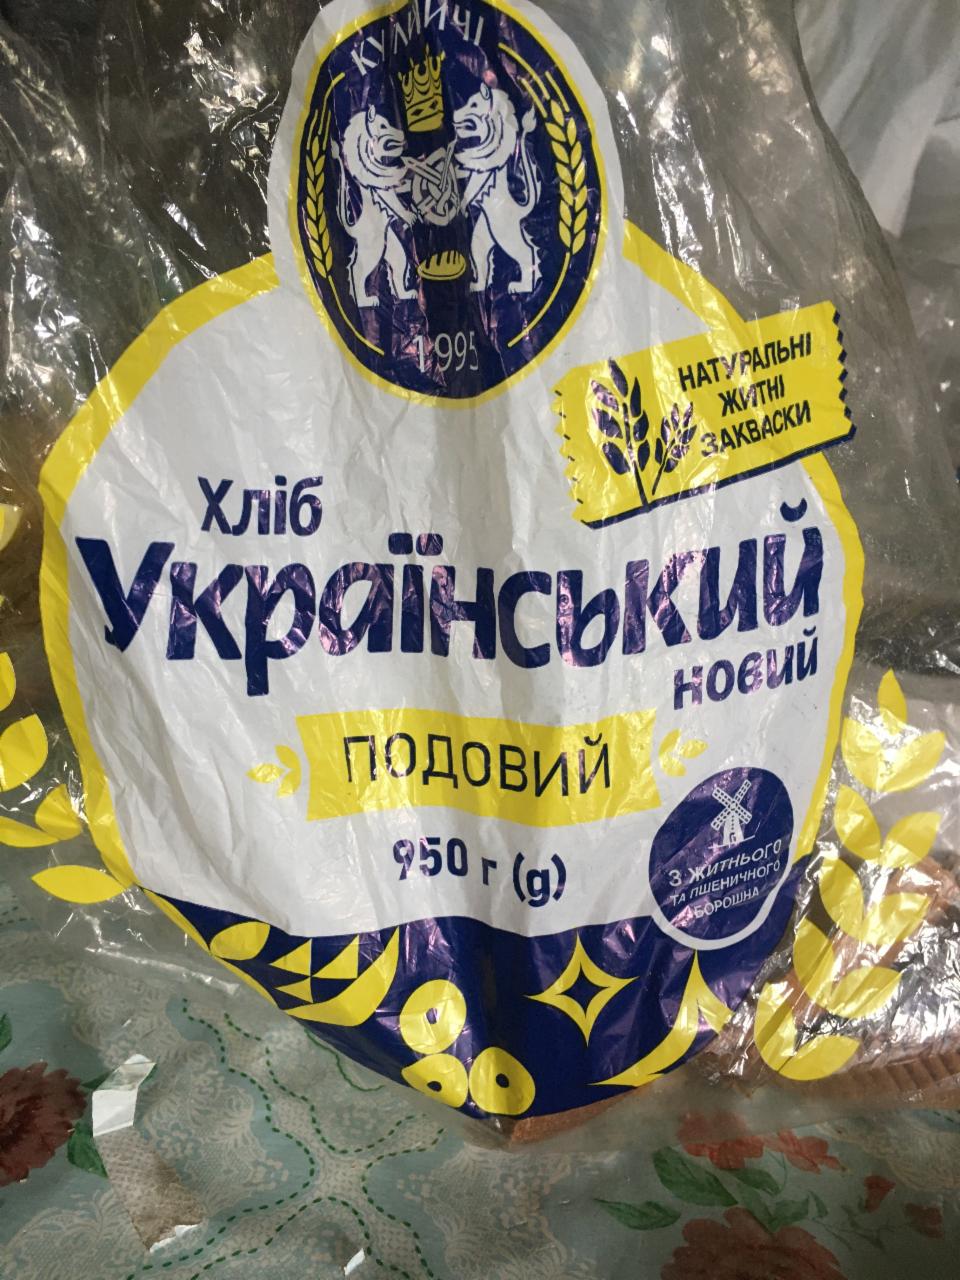 Фото - Хліб Український новий подовий Кулиничі